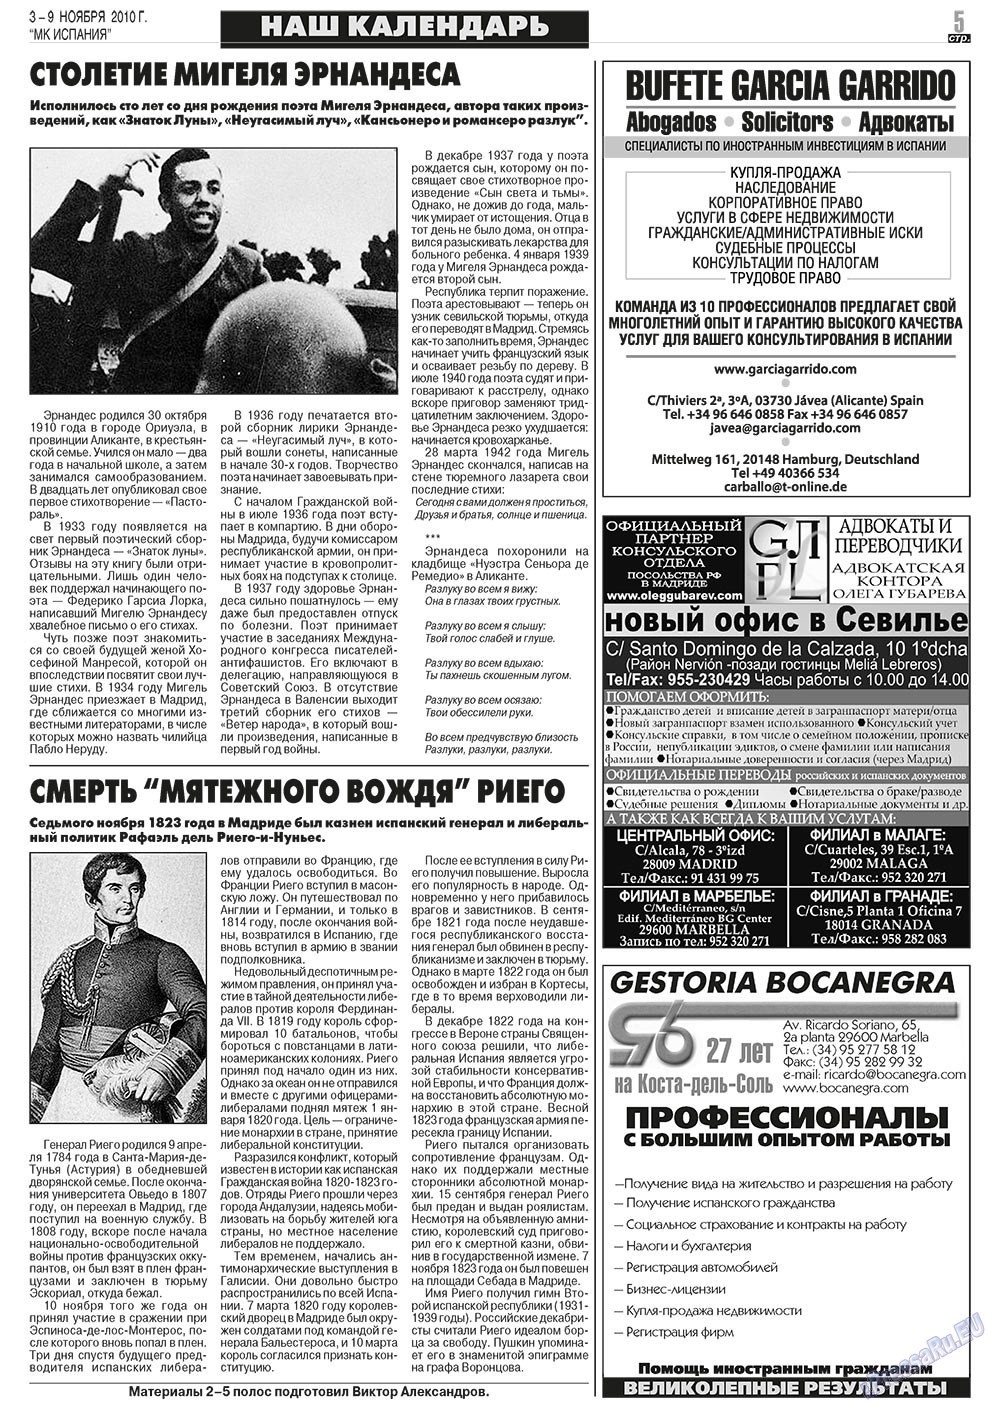 МК Испания, газета. 2010 №44 стр.5